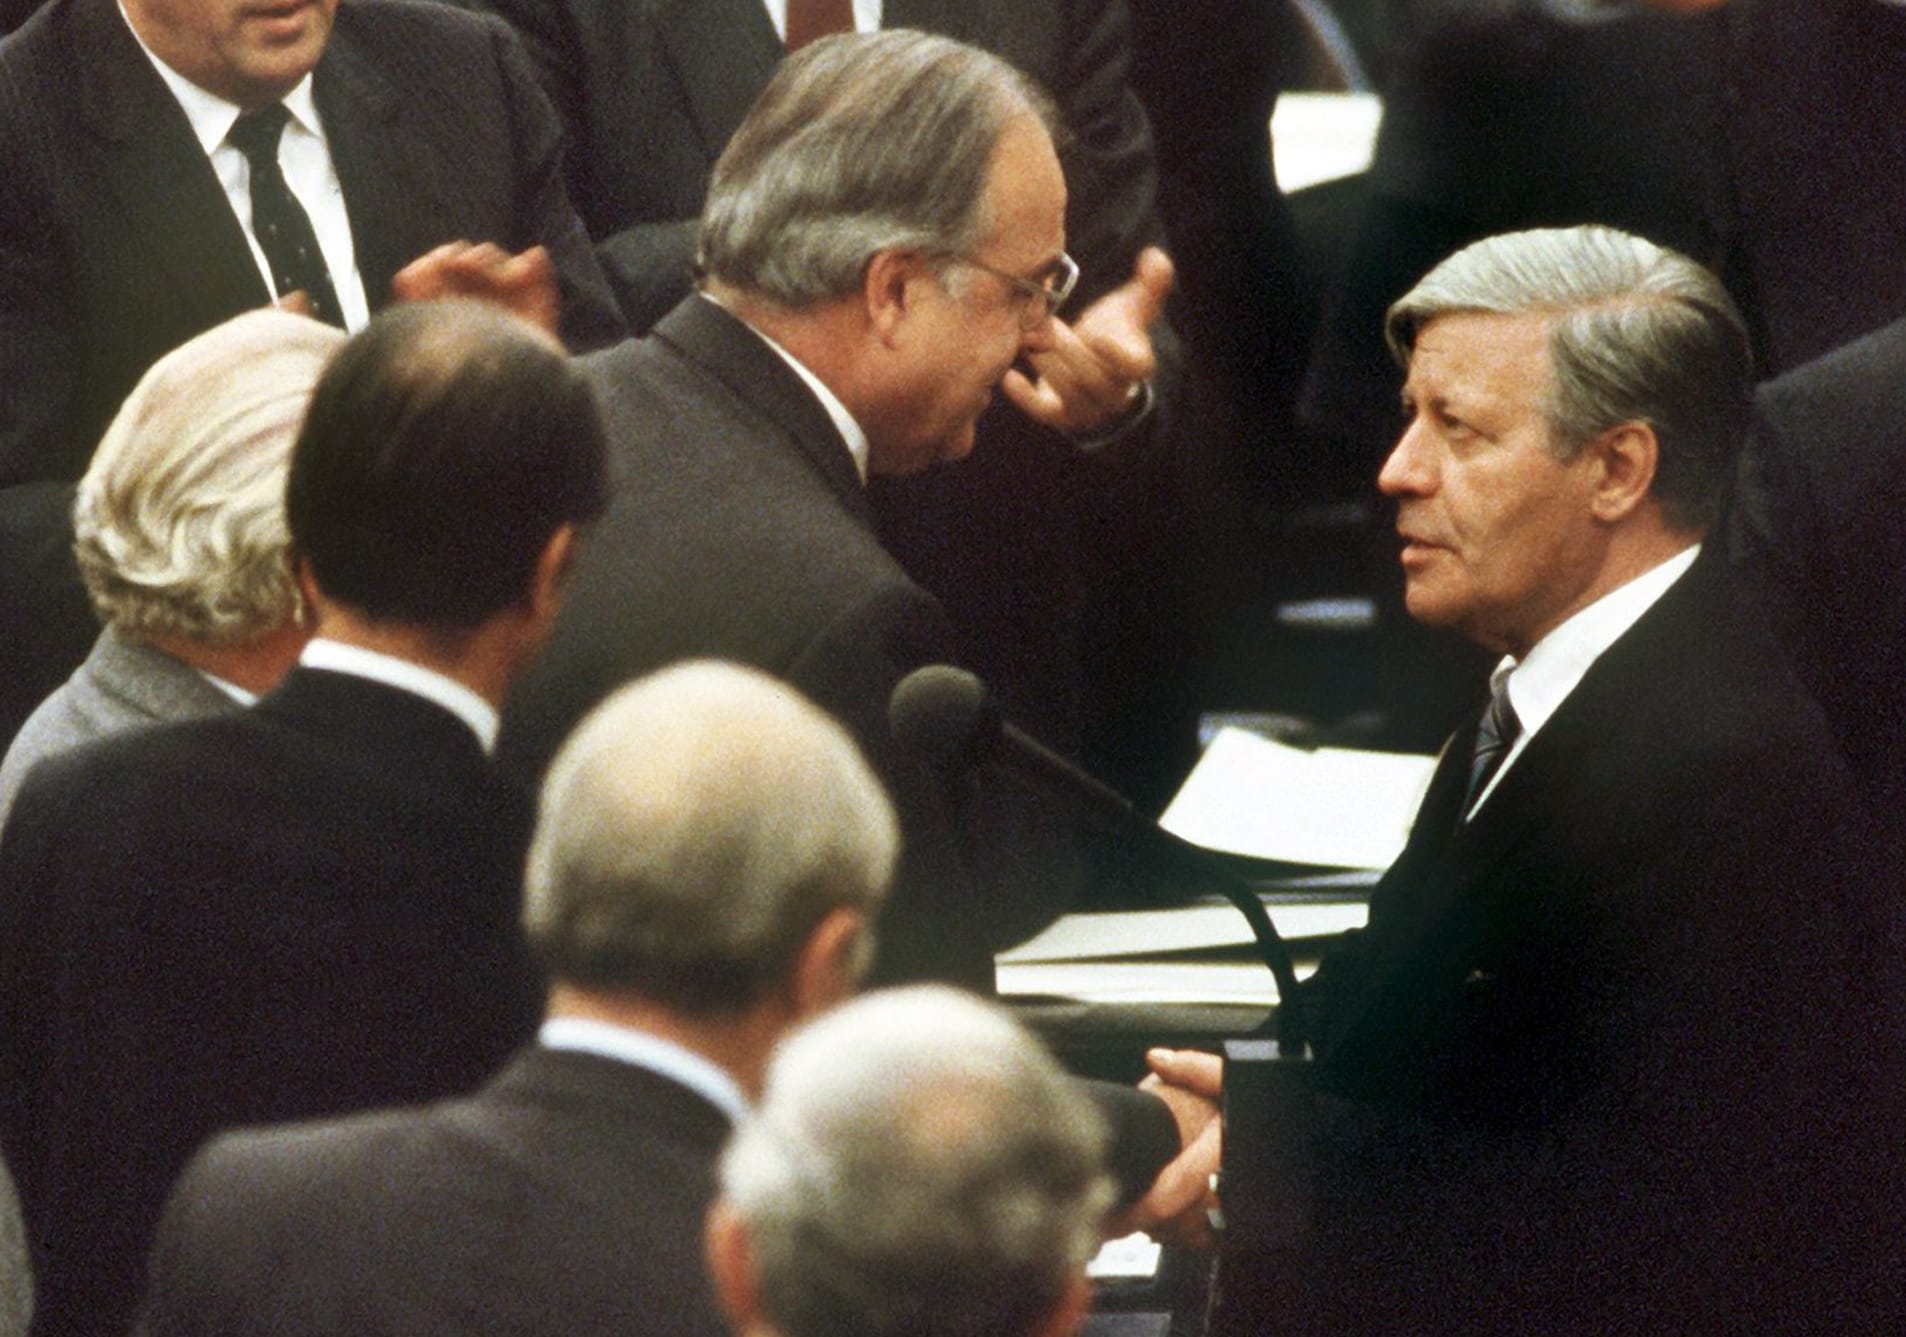 Am 01.10.1982 wurde Helmut Schmidt (rechts) durch ein konstruktives Misstrauensvotum gestürzt. Er gratulierte seinem Nachfolger Helmut Kohl (Mitte), der mit Stimmen von CDU, CSU und der Mehrheit der FDP-Fraktion gewählt wurde.